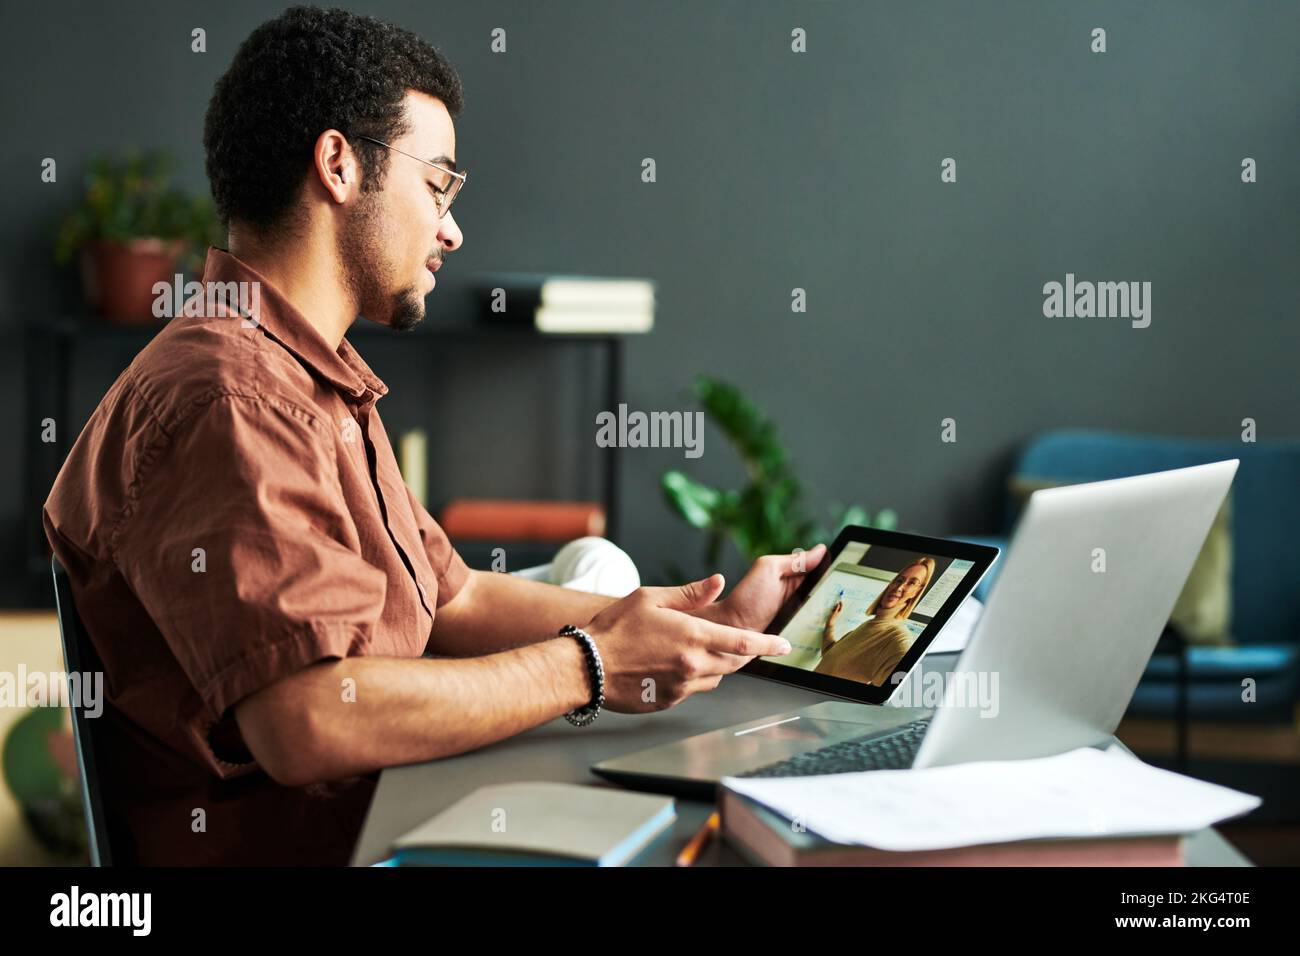 Junger selbstbewusster Mann, der den Lehrer ansieht, der während des Online-Unterrichts eine Präsentation auf dem Tablet-Bildschirm macht und Punkte zu neuen Themen diskutiert Stockfoto